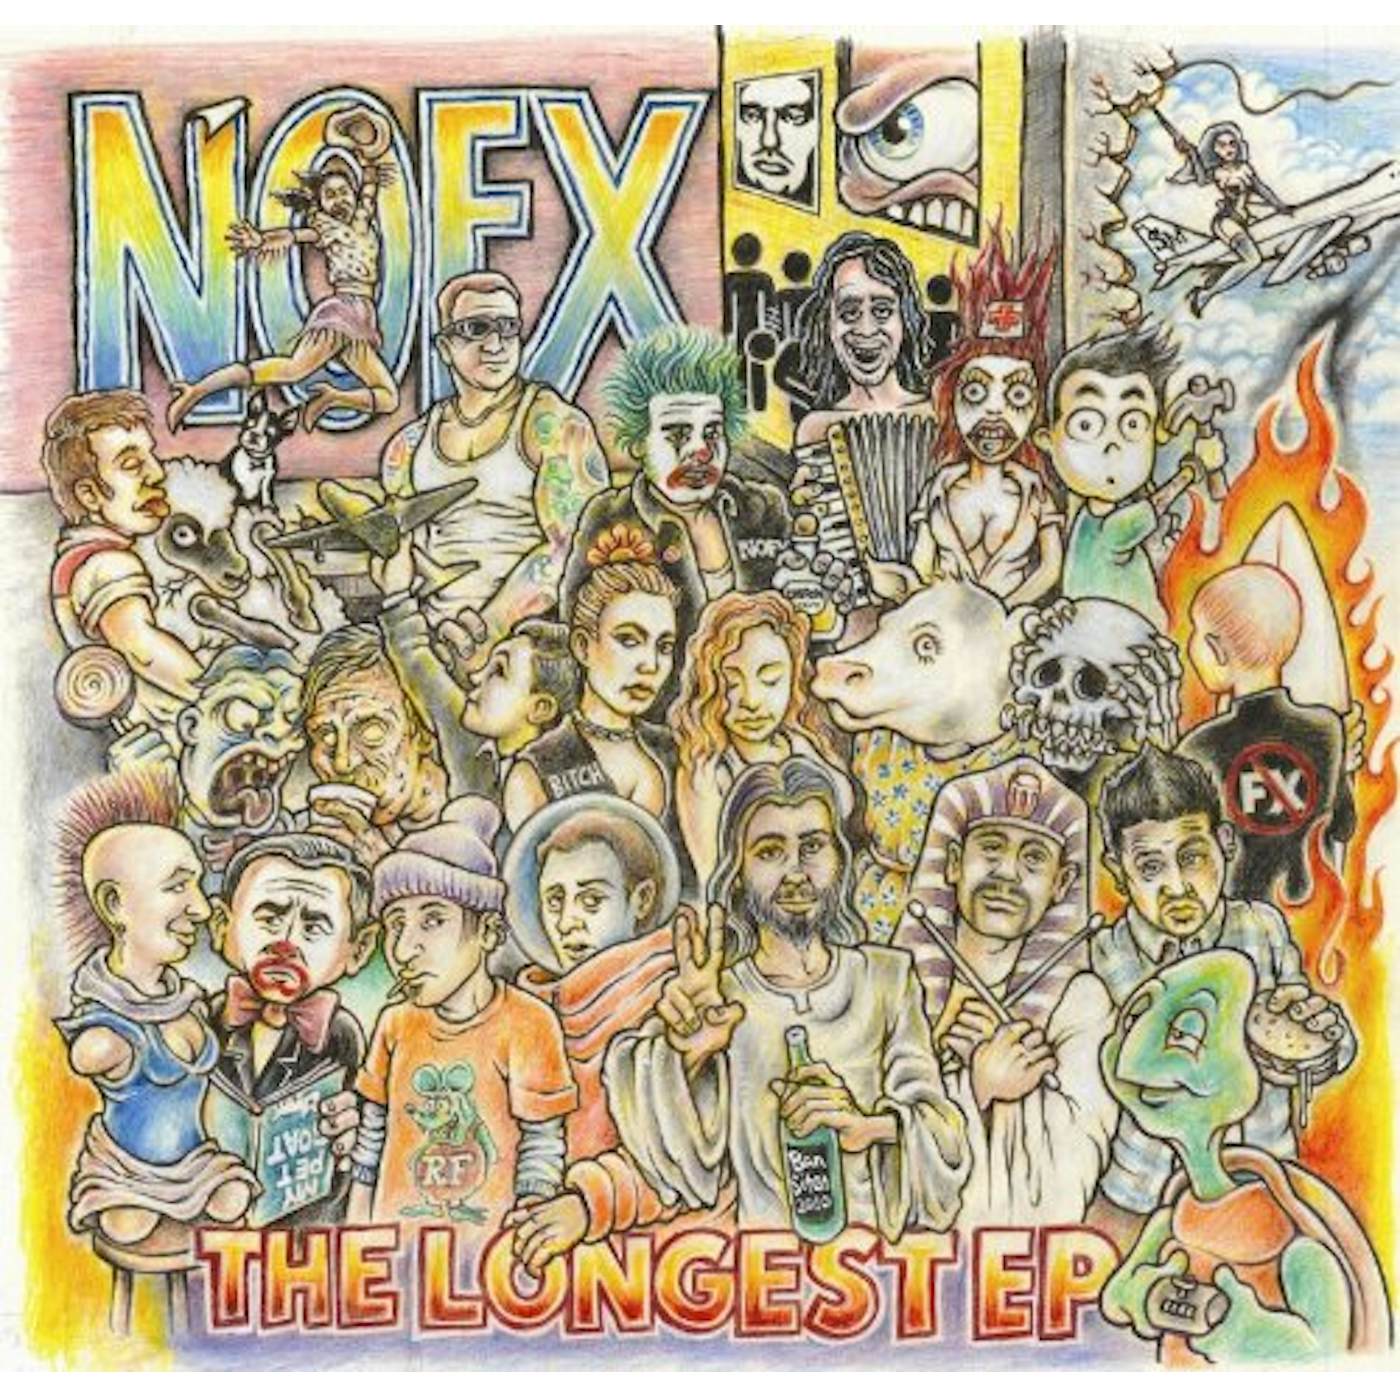 NOFX LONGEST EP Vinyl Record